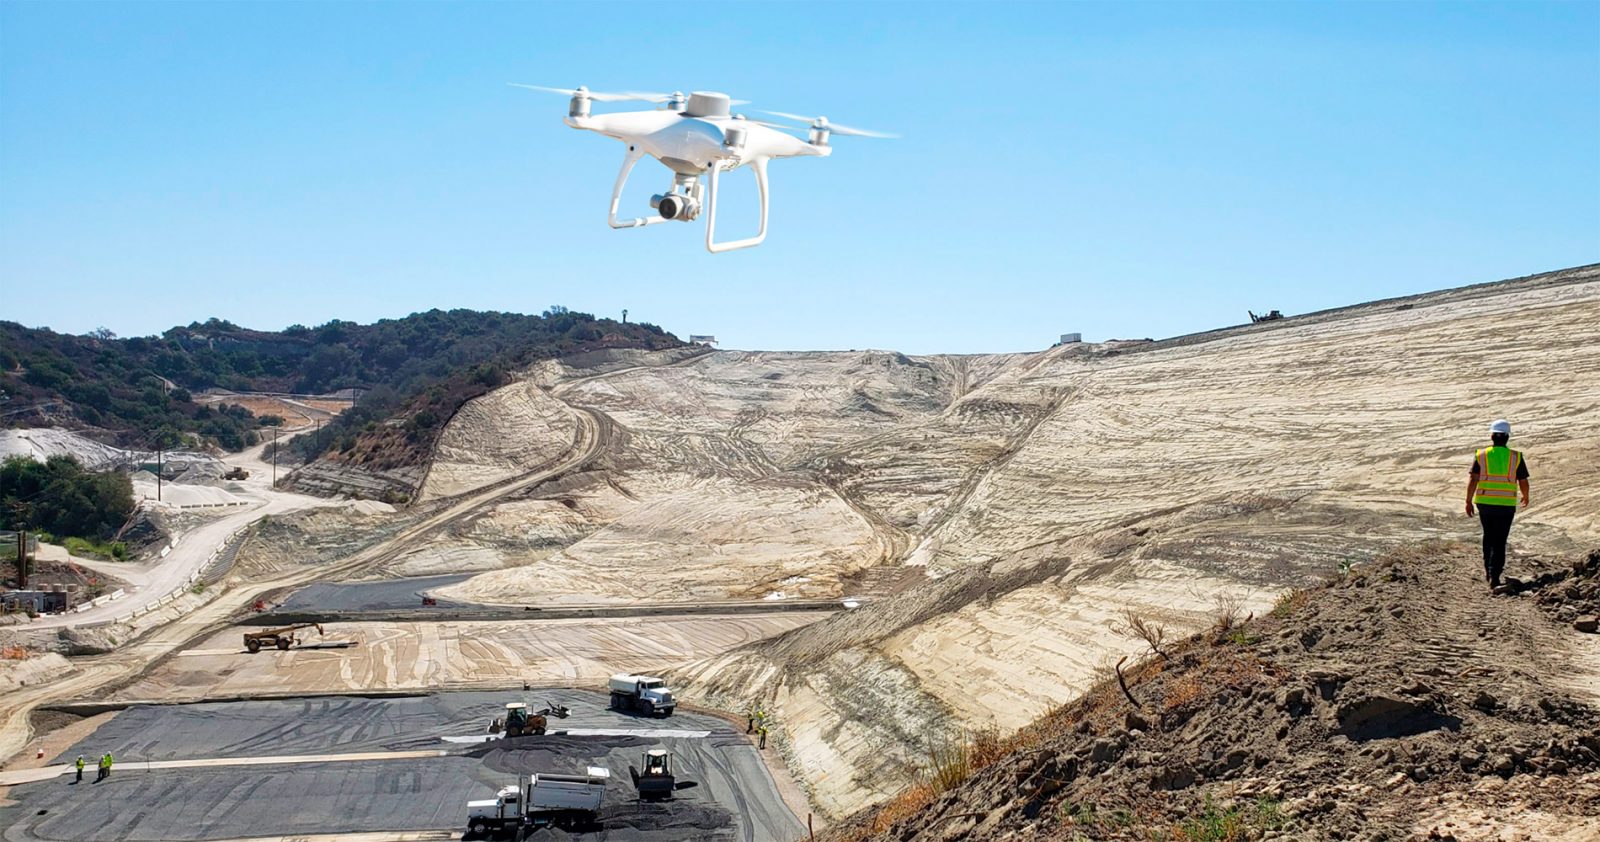 фото: Эксперты оценили потенциал дронов в добывающей промышленности